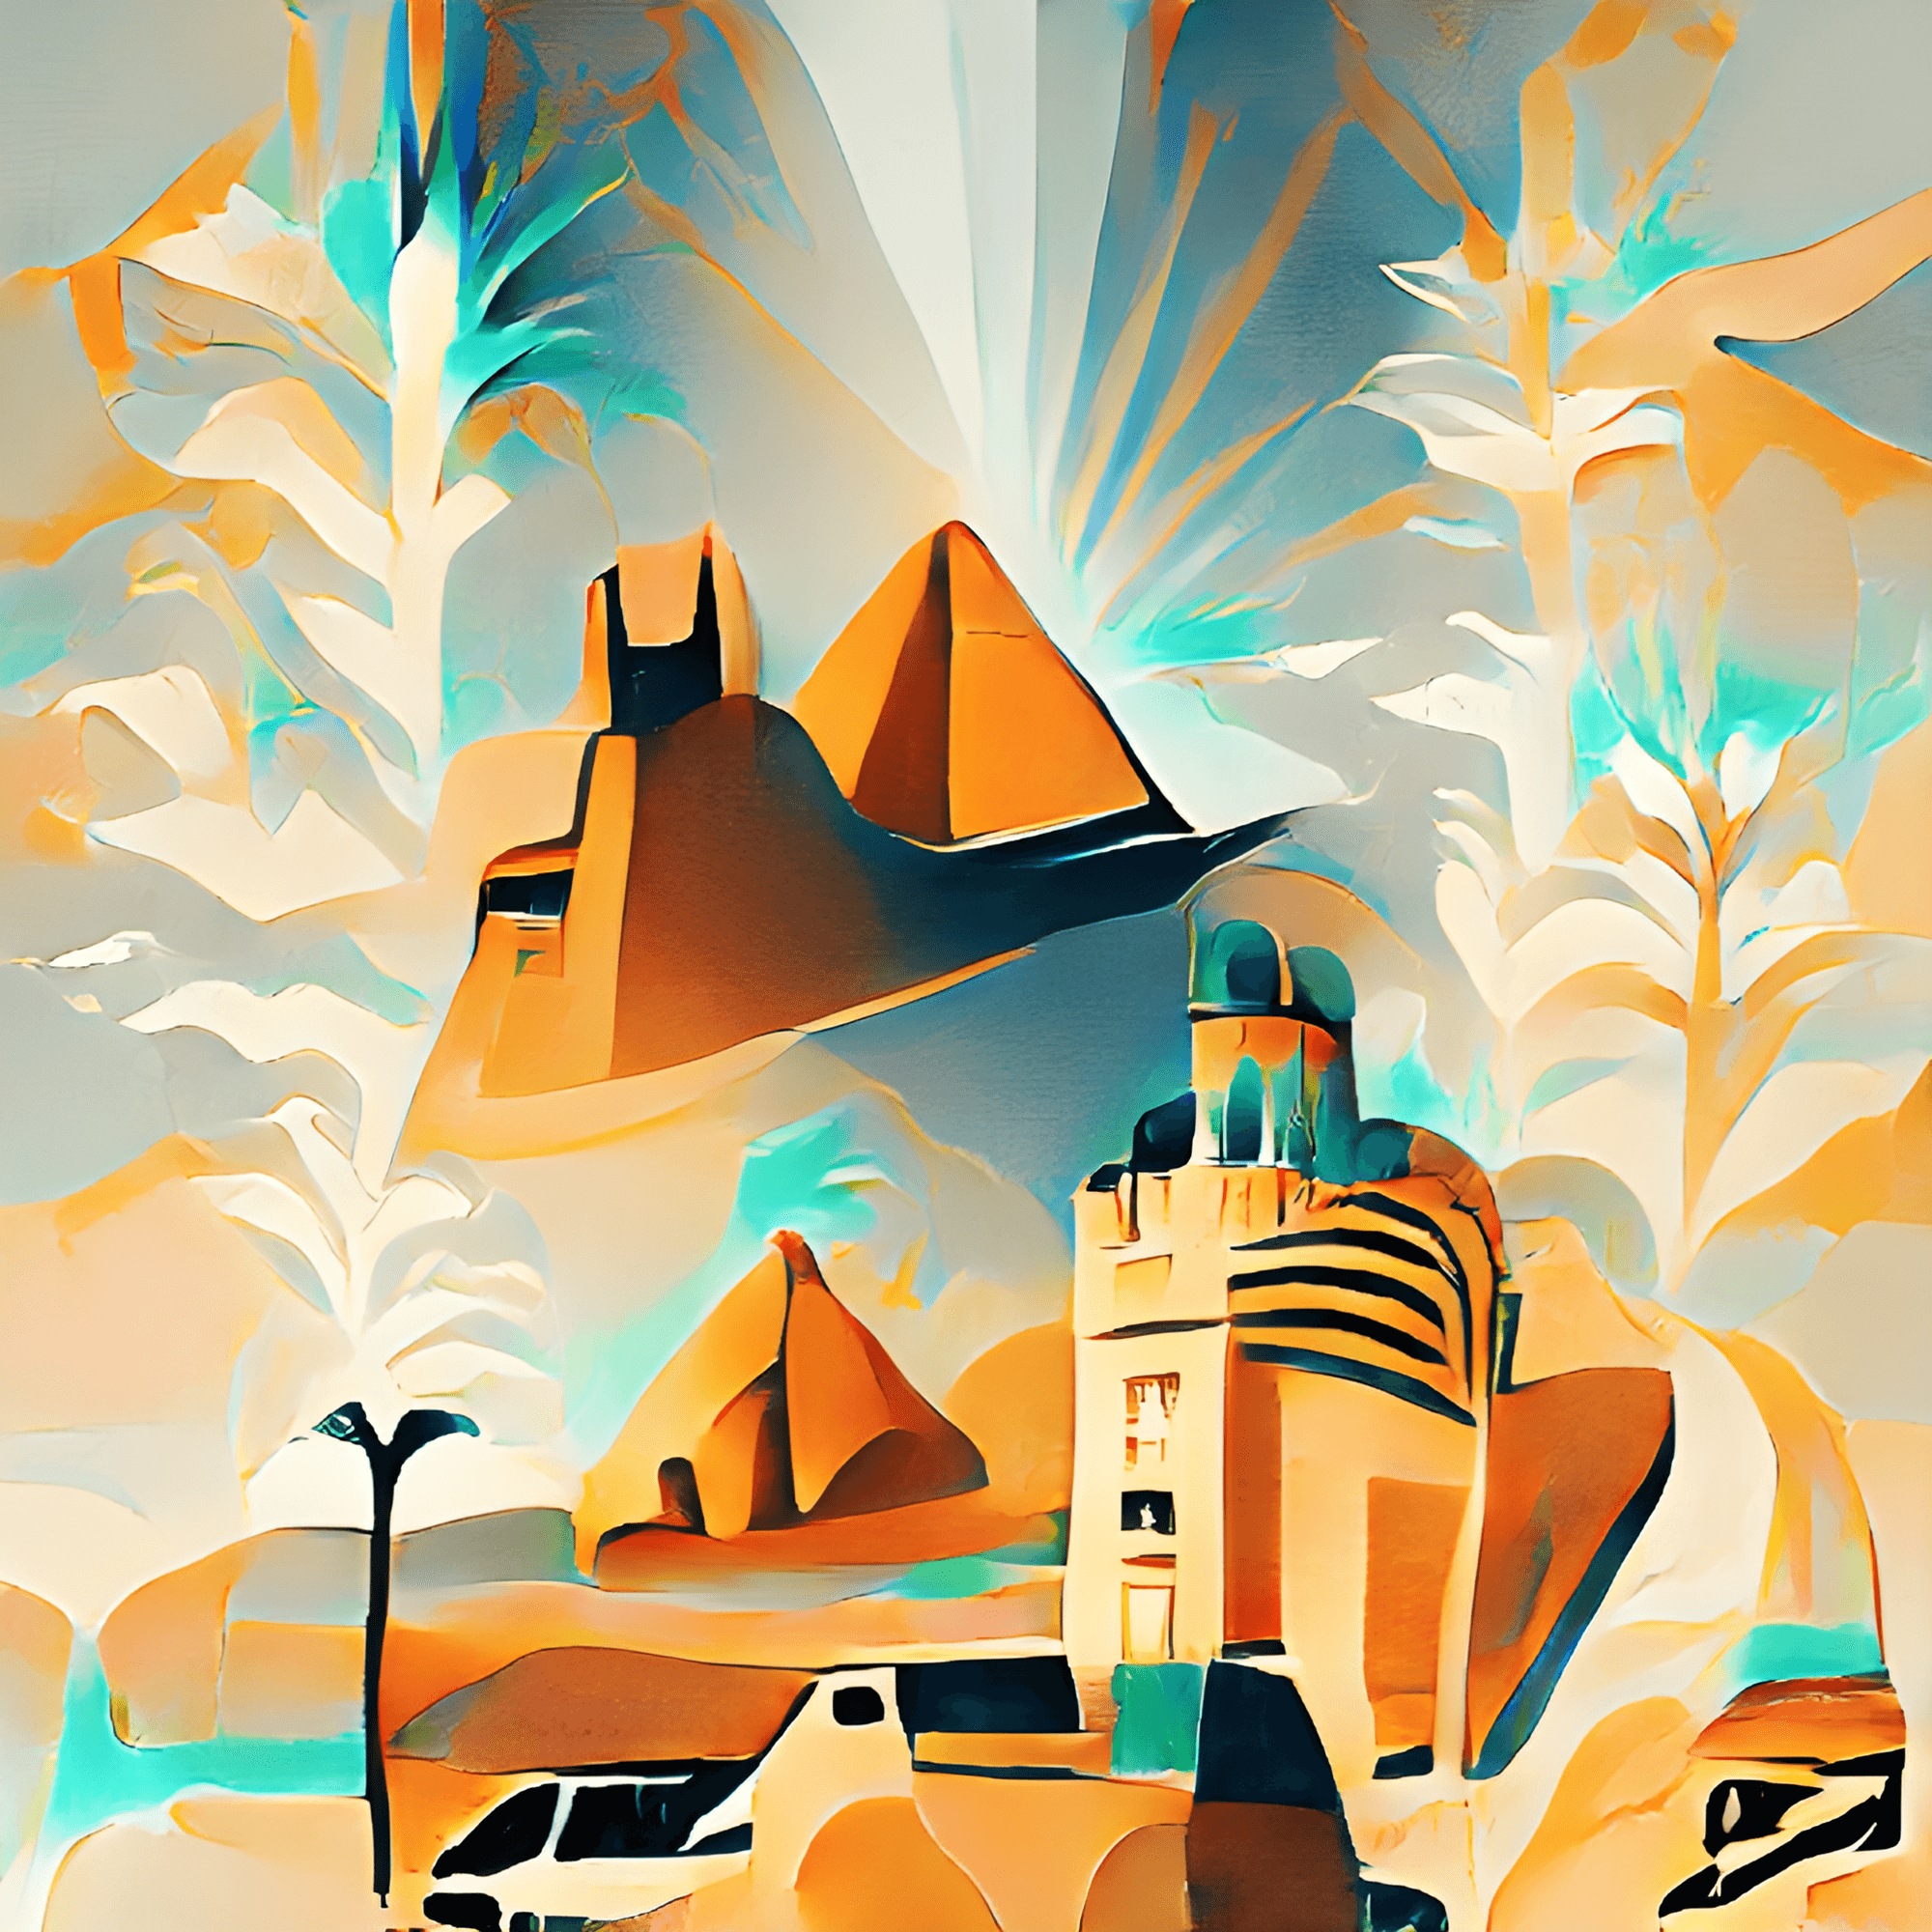 Egypt as Fantasy Land